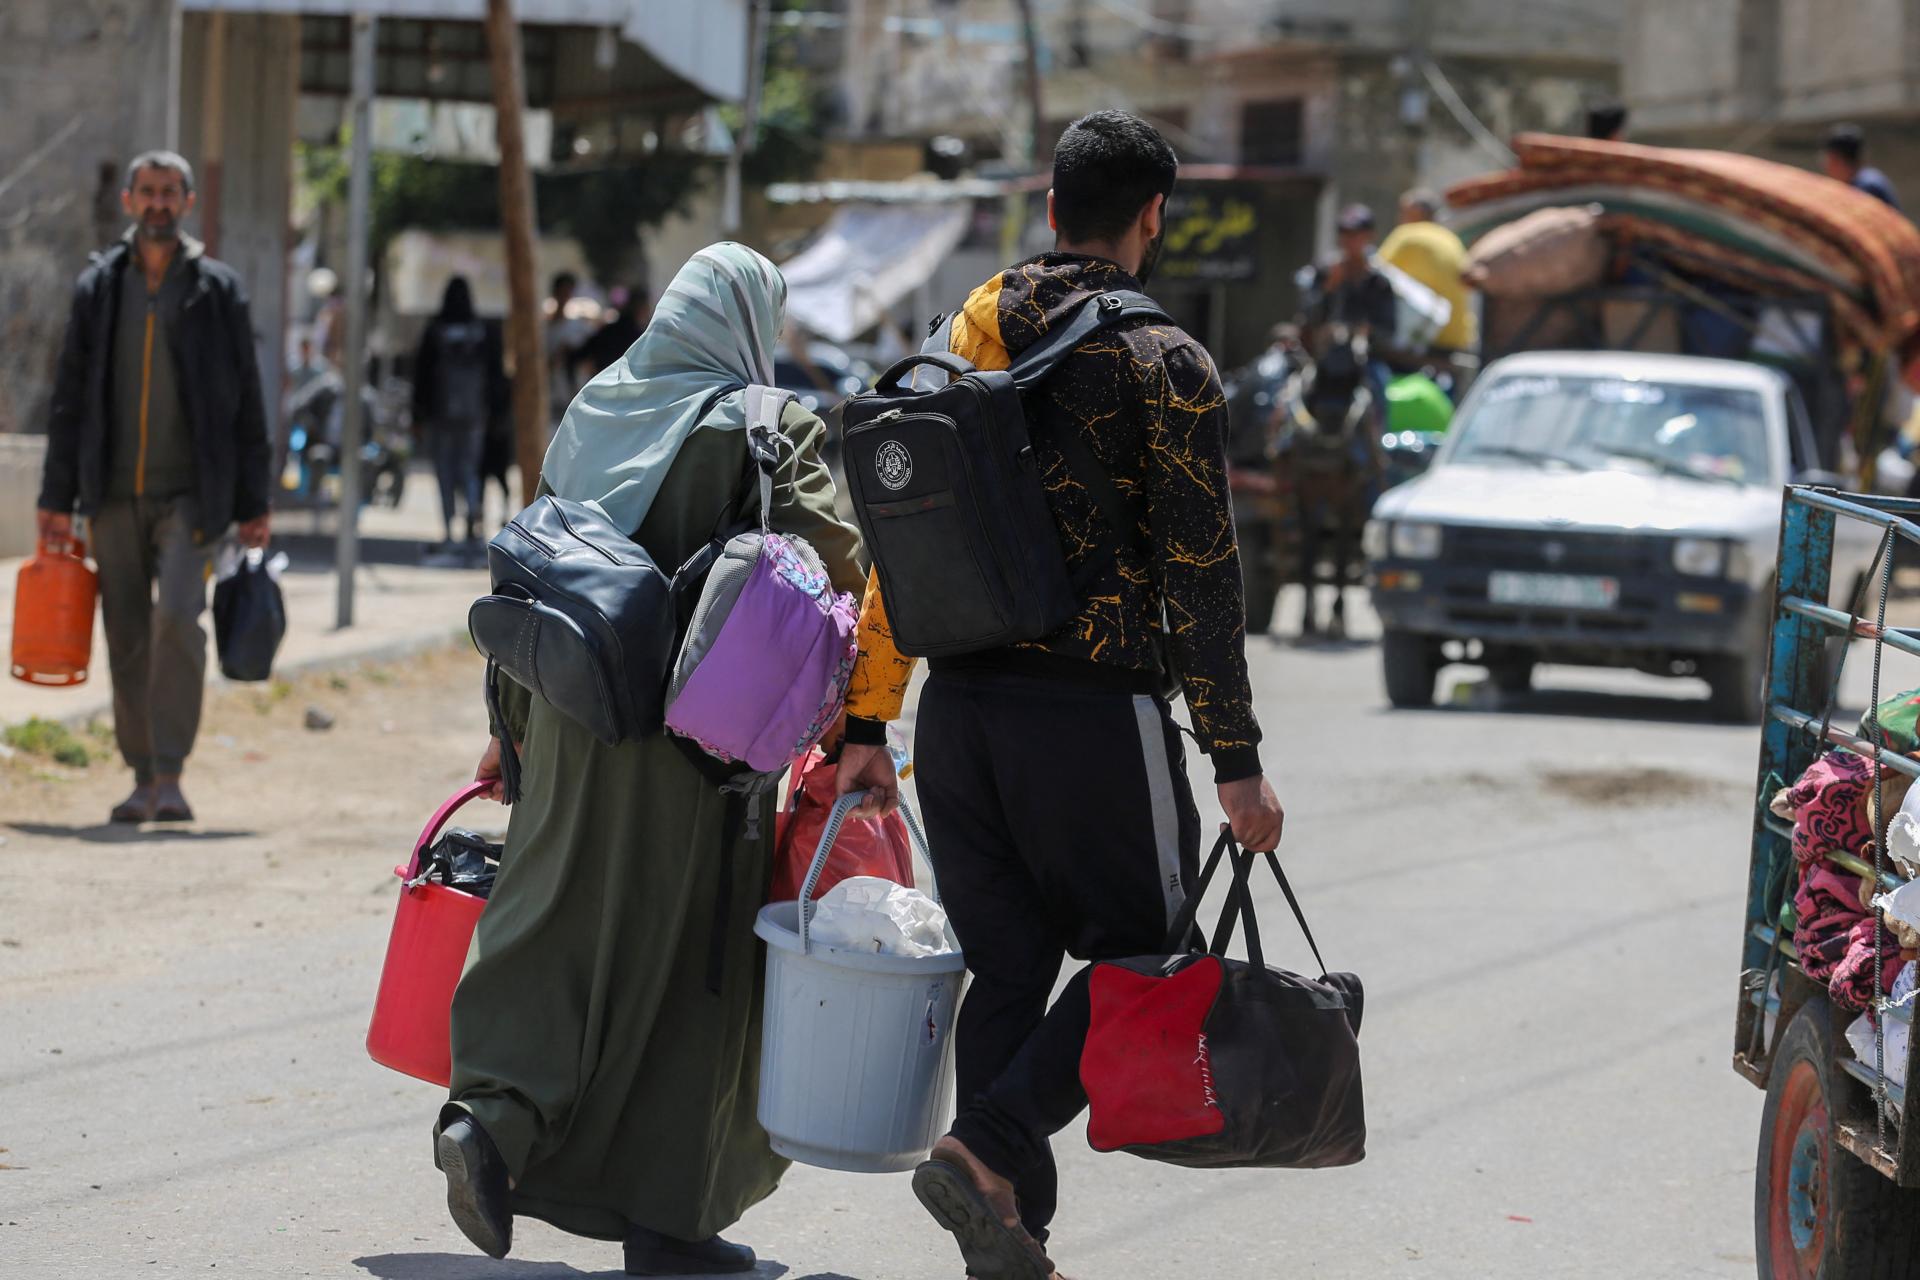 Zúfalí a premočení od dažďa. Civilisti opúšťajú Rafah pre hrozbu bombardovania, musia hľadať útočisko inde